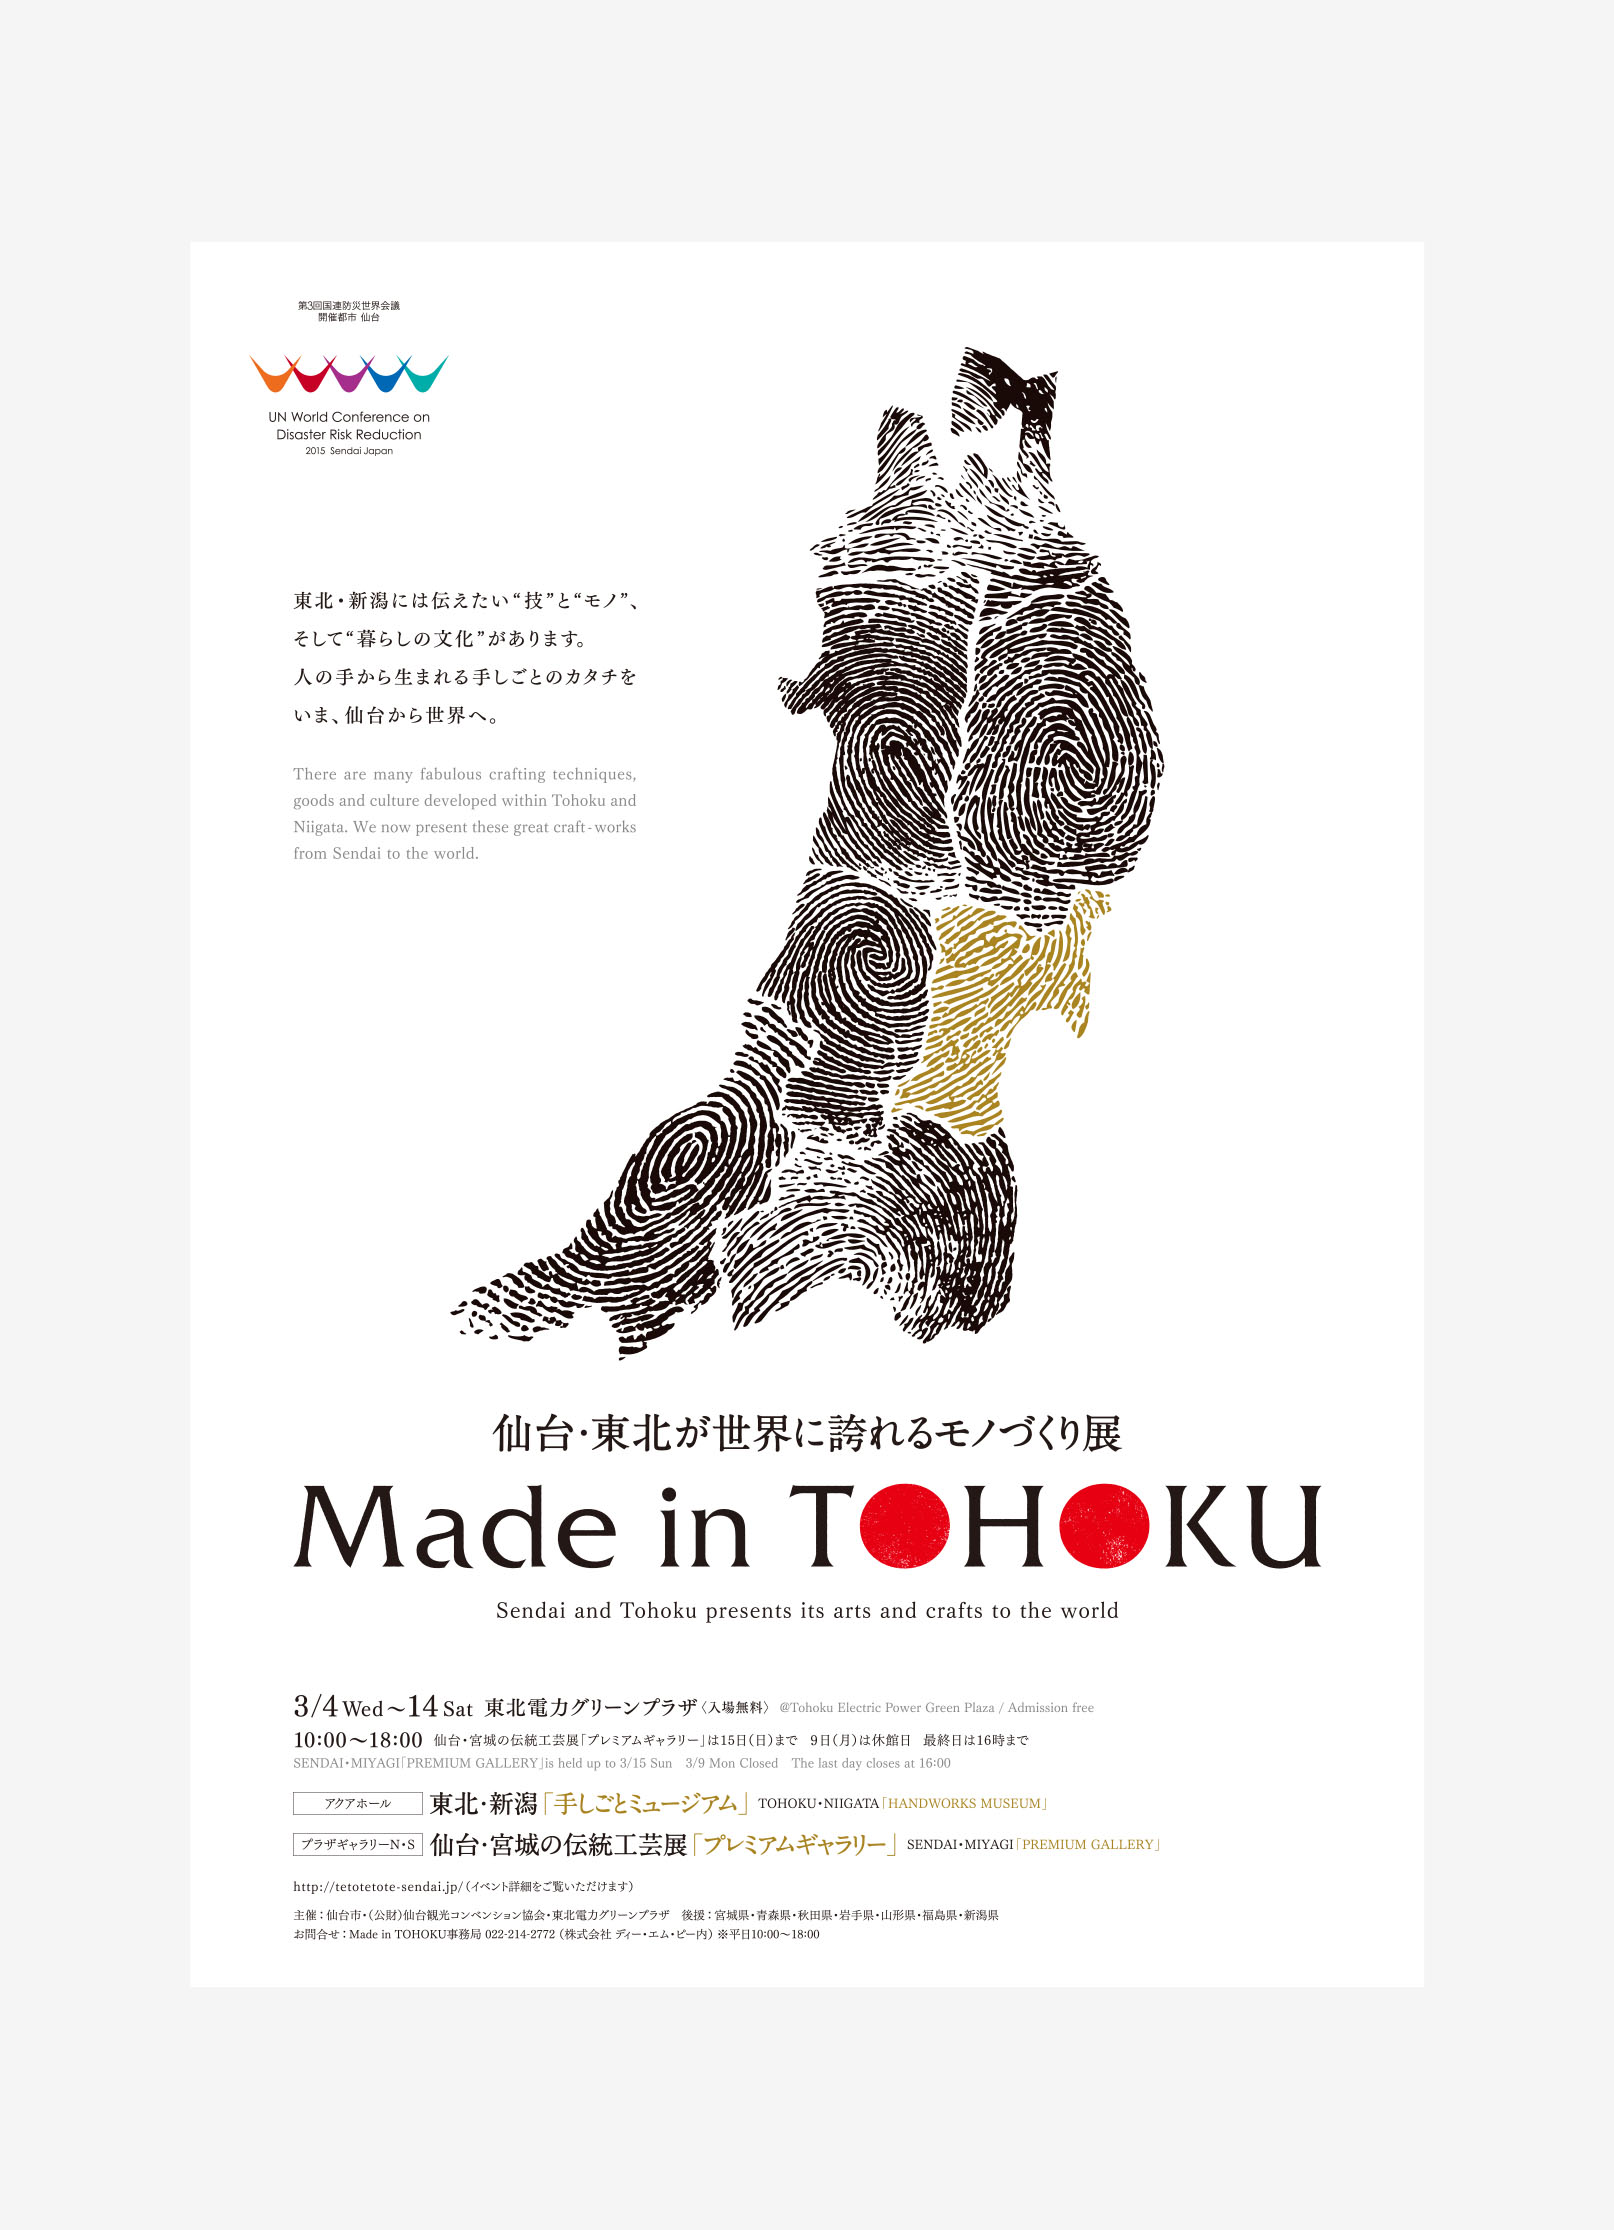 仙台・東北が世界に誇れるモノづくり展『Made in TOHOKU』 フライヤー、ポスター